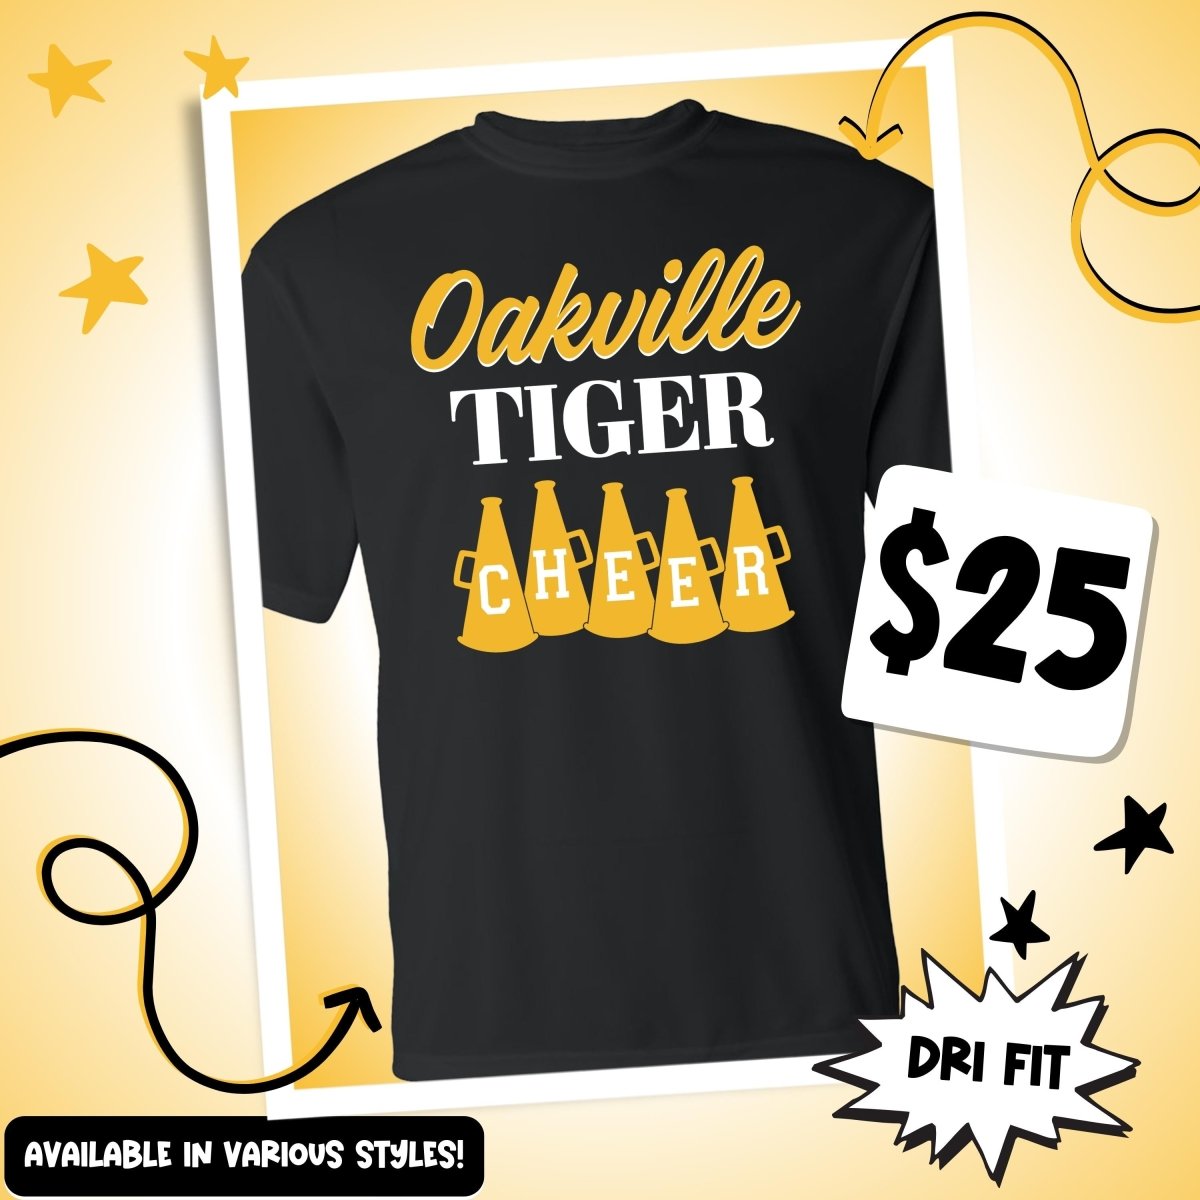 Oakville Tiger Cheer Megaphones